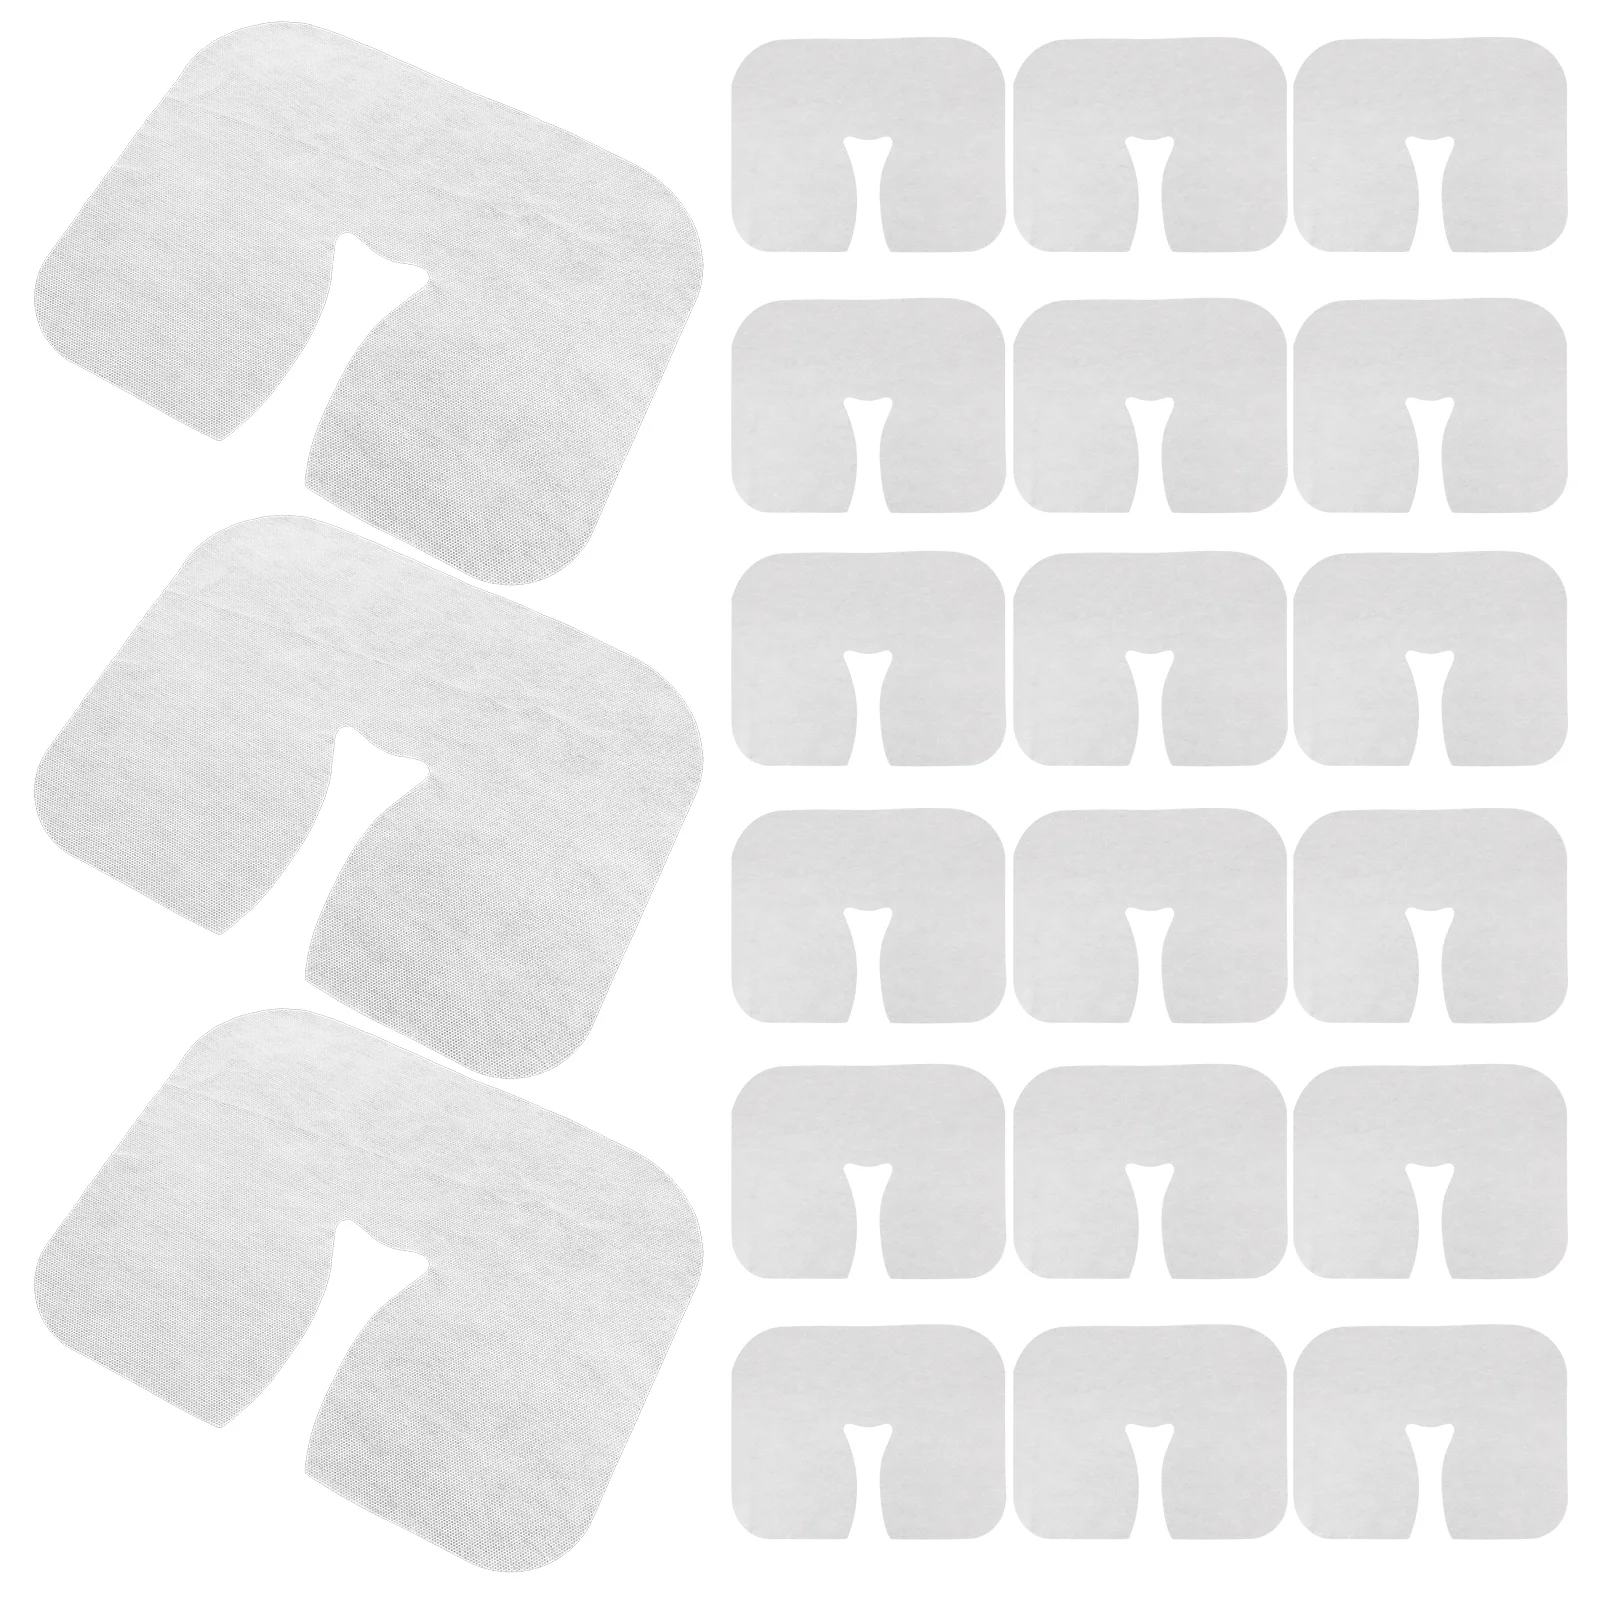 400 Pcs Disposable Lying Pillow Case Salon Covers Pillowcase Massage Hole Pads Non-woven Fabric Rest Cradle